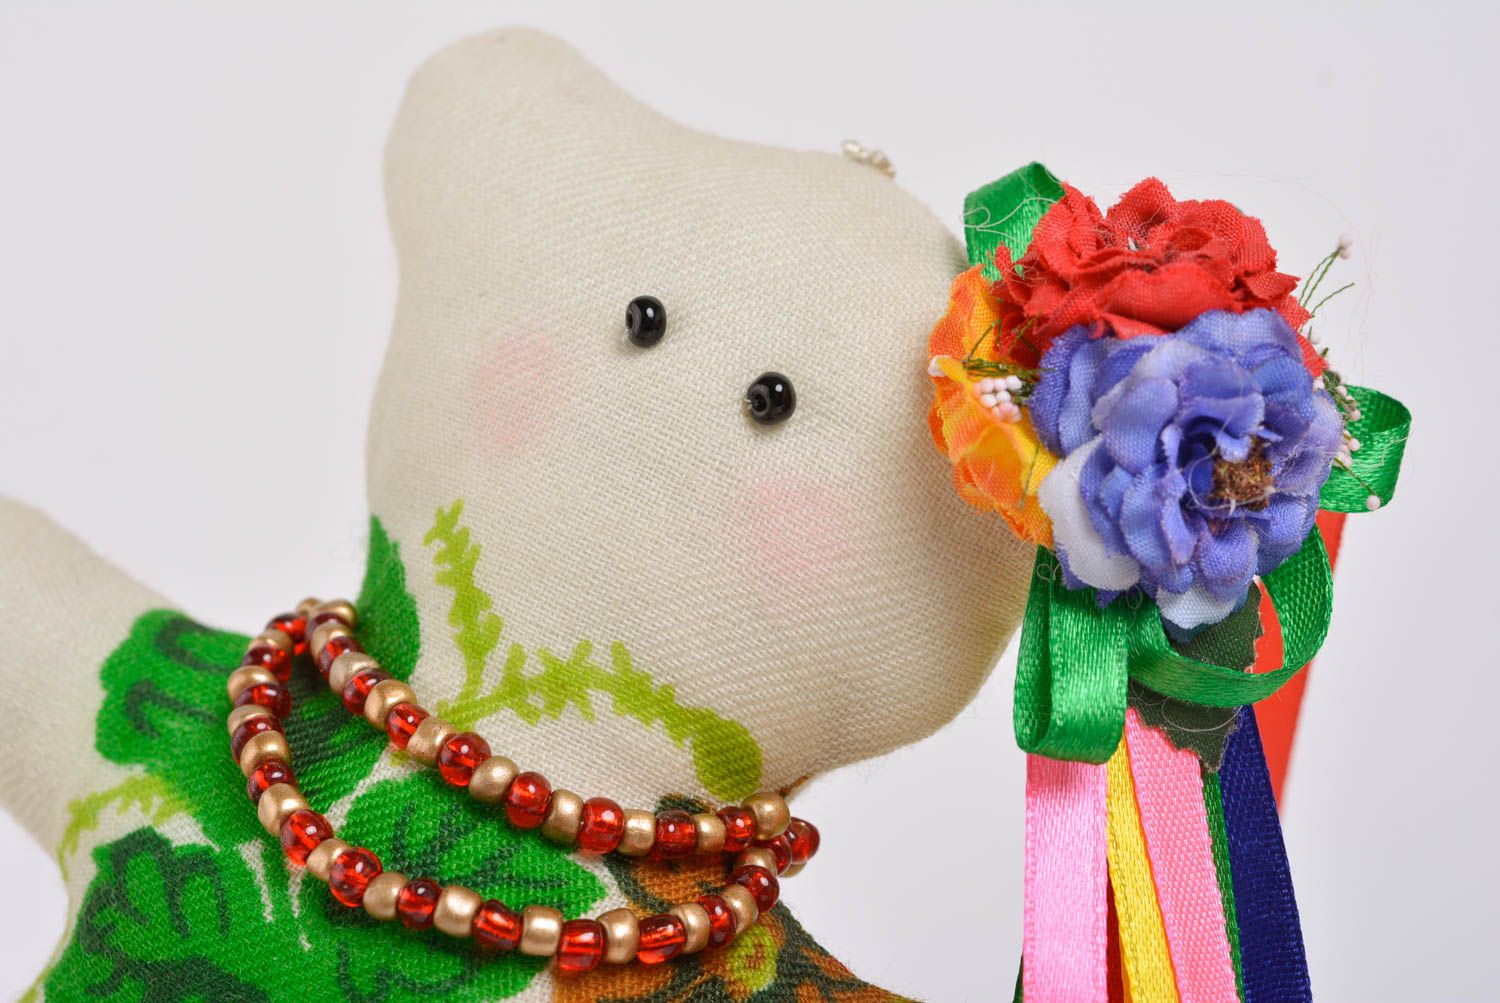 Joli jouet mou en tissu fait main en forme d'ourse sympa avec fleurs cadeau photo 2